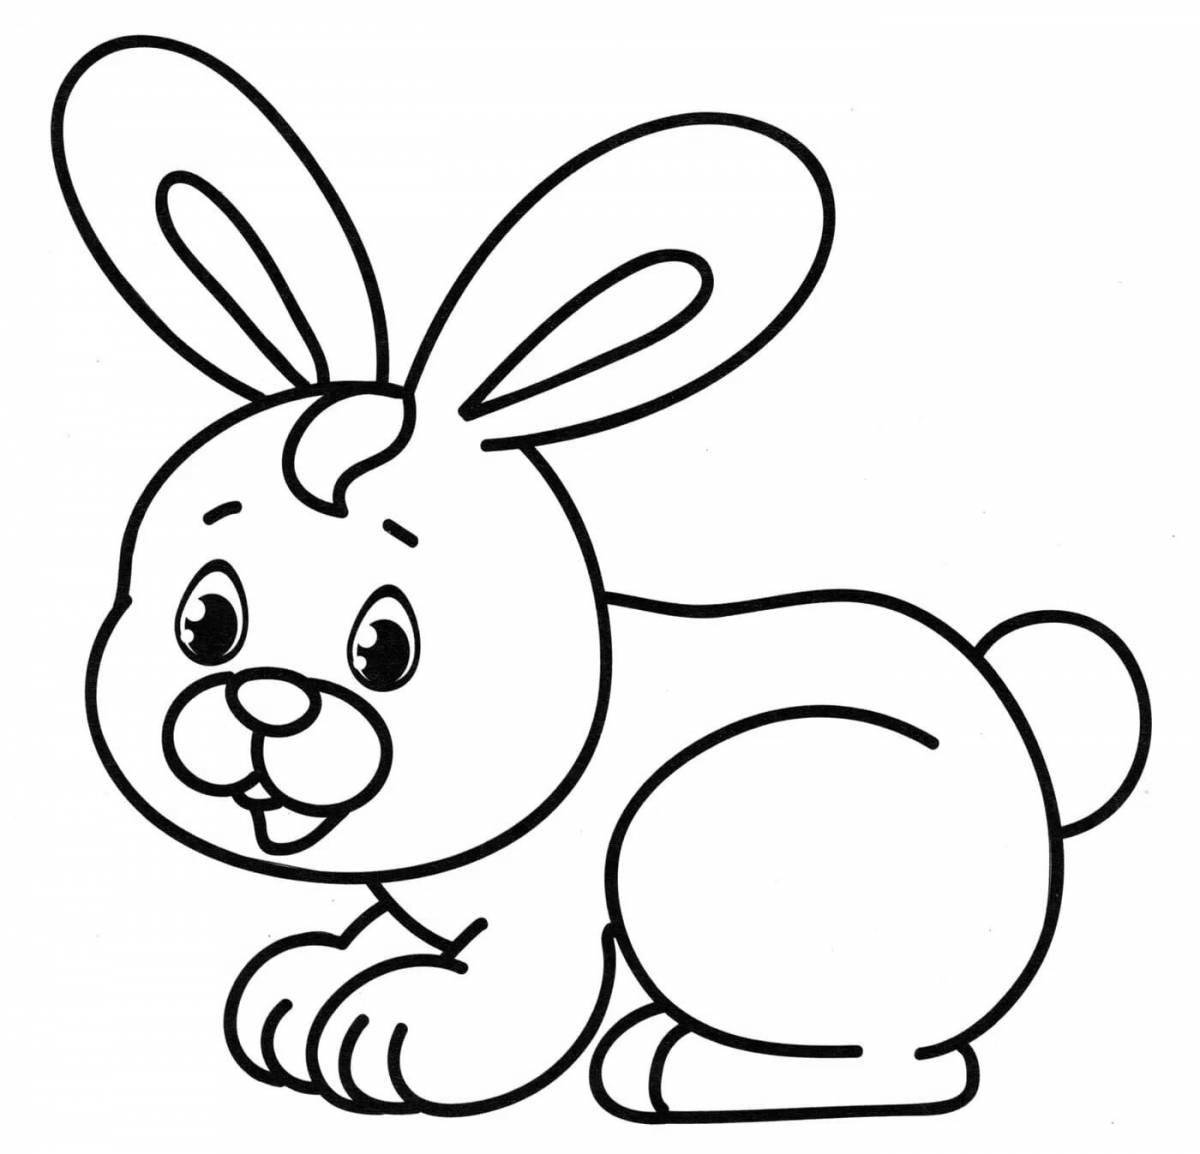 Юмористическая раскраска кролик для детей 3 4